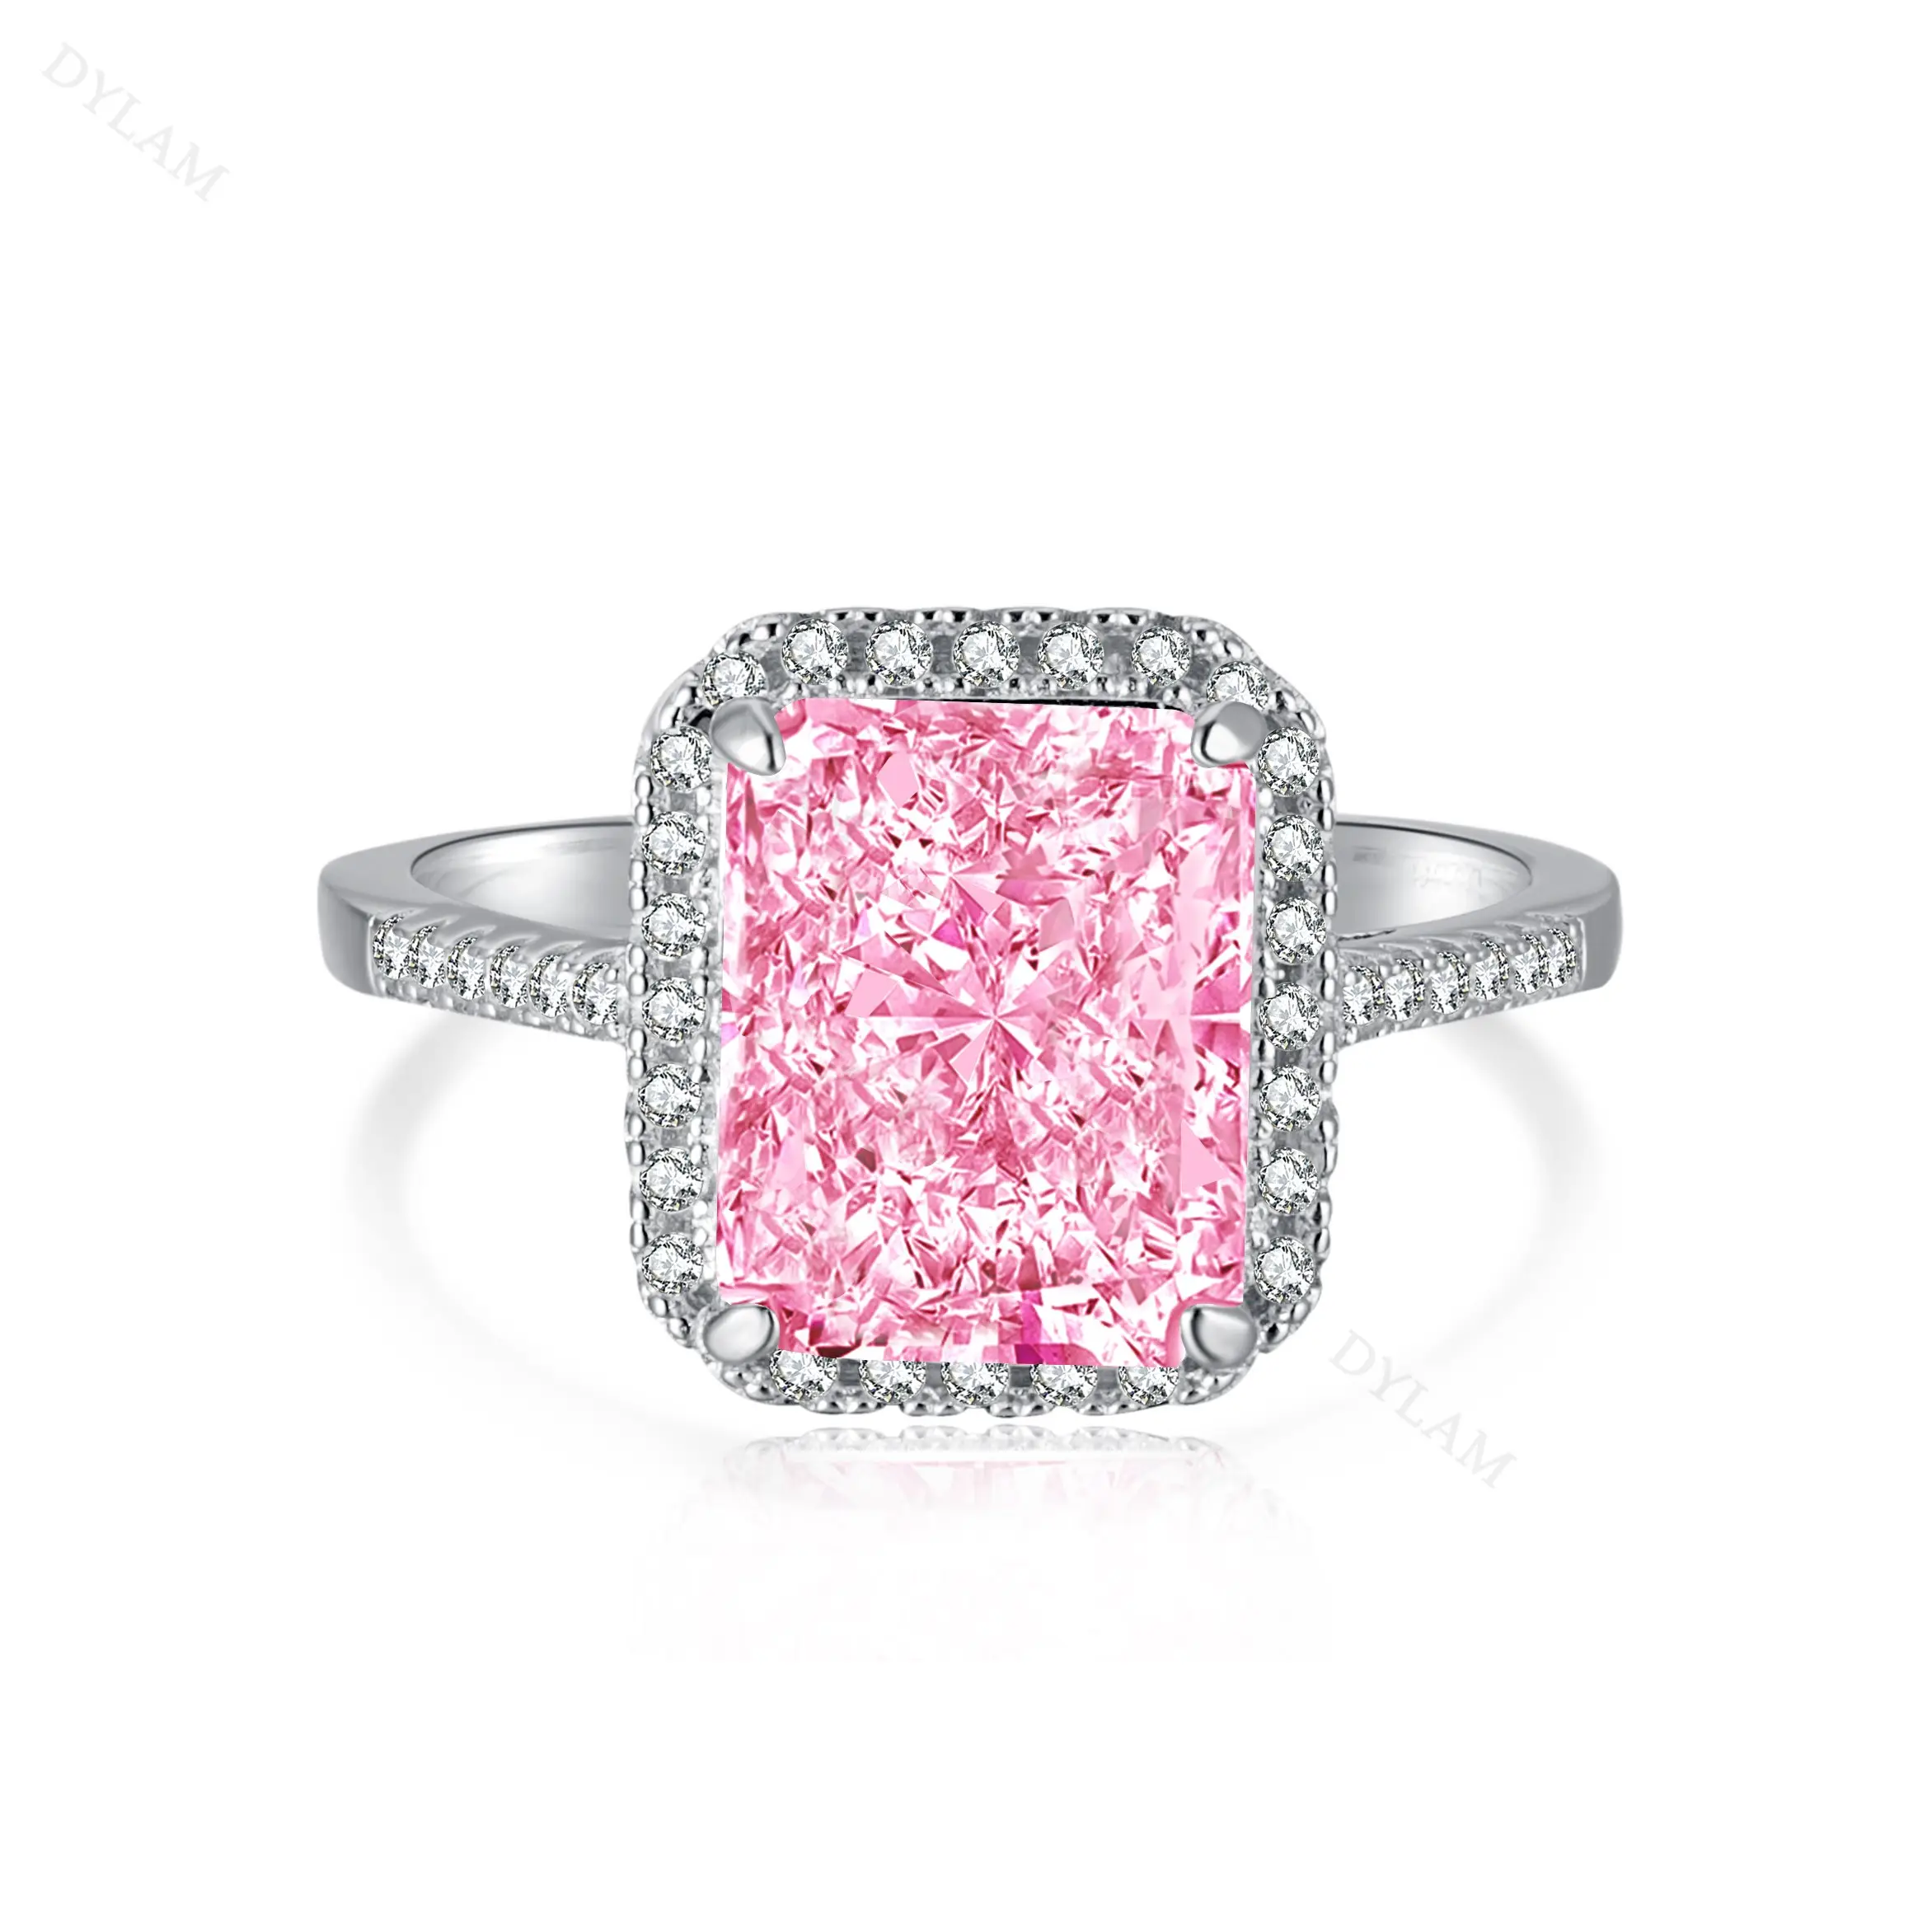 S925 plata esterlina CZ Cubic Zirconia anillo de oro rosa corazón anillo grueso compromiso de boda anillos rosas joyería Mujer